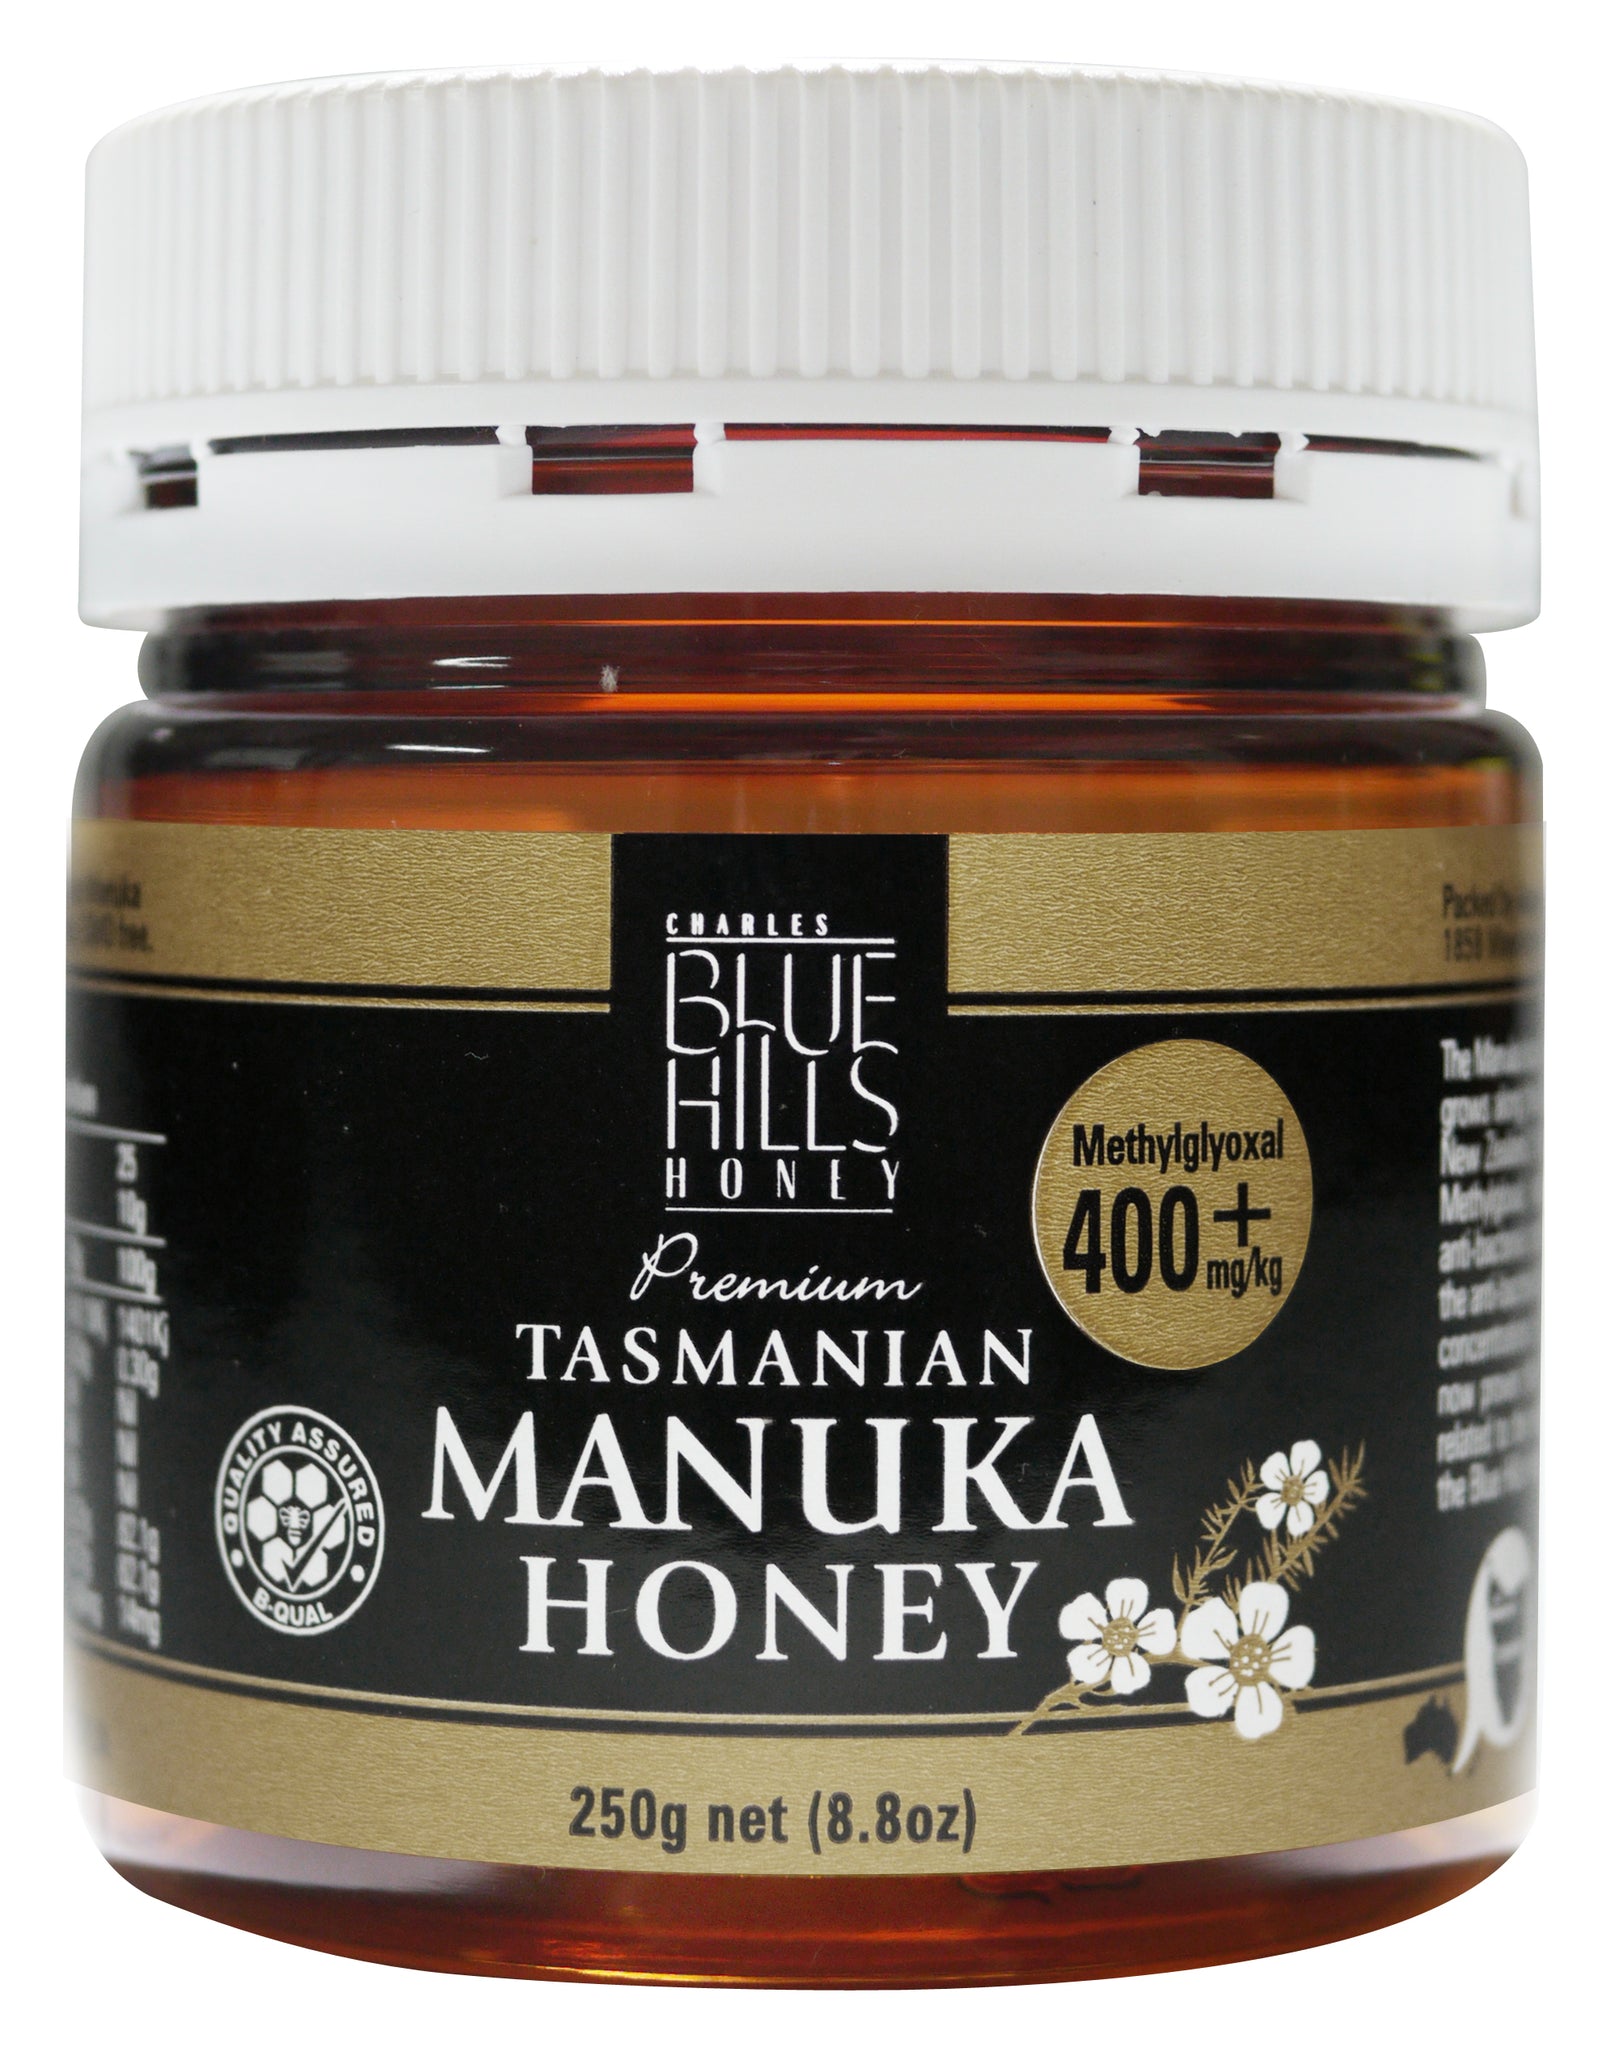 Manuka honey (400+), Blue Hills, Tasmanian